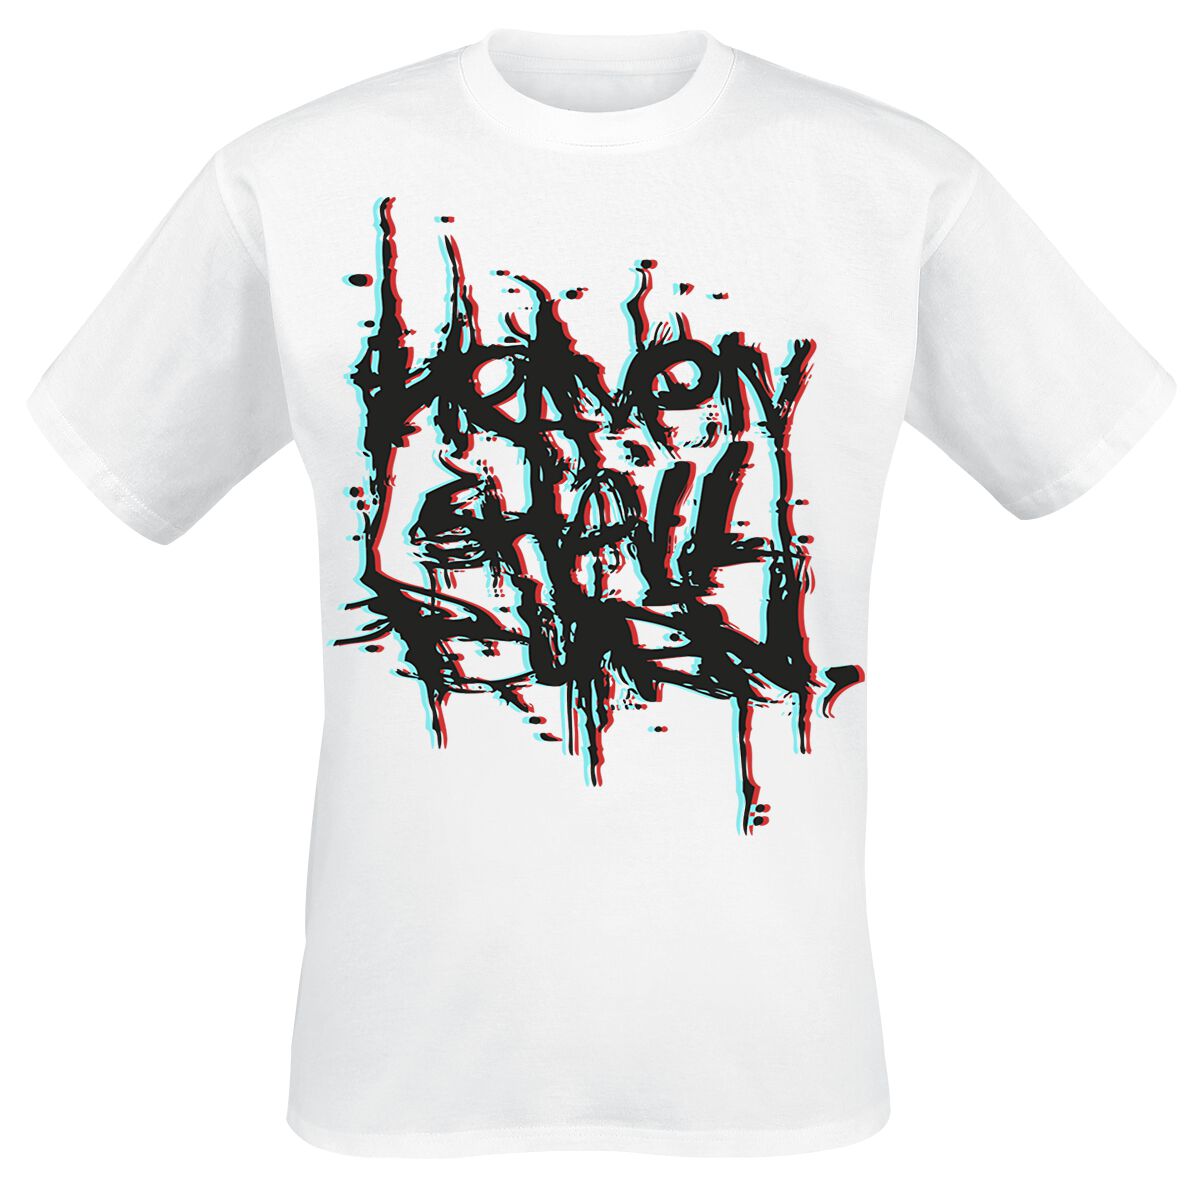 Heaven Shall Burn T-Shirt - 3D Logo - S bis XXL - für Männer - Größe XL - weiß  - Lizenziertes Merchandise!